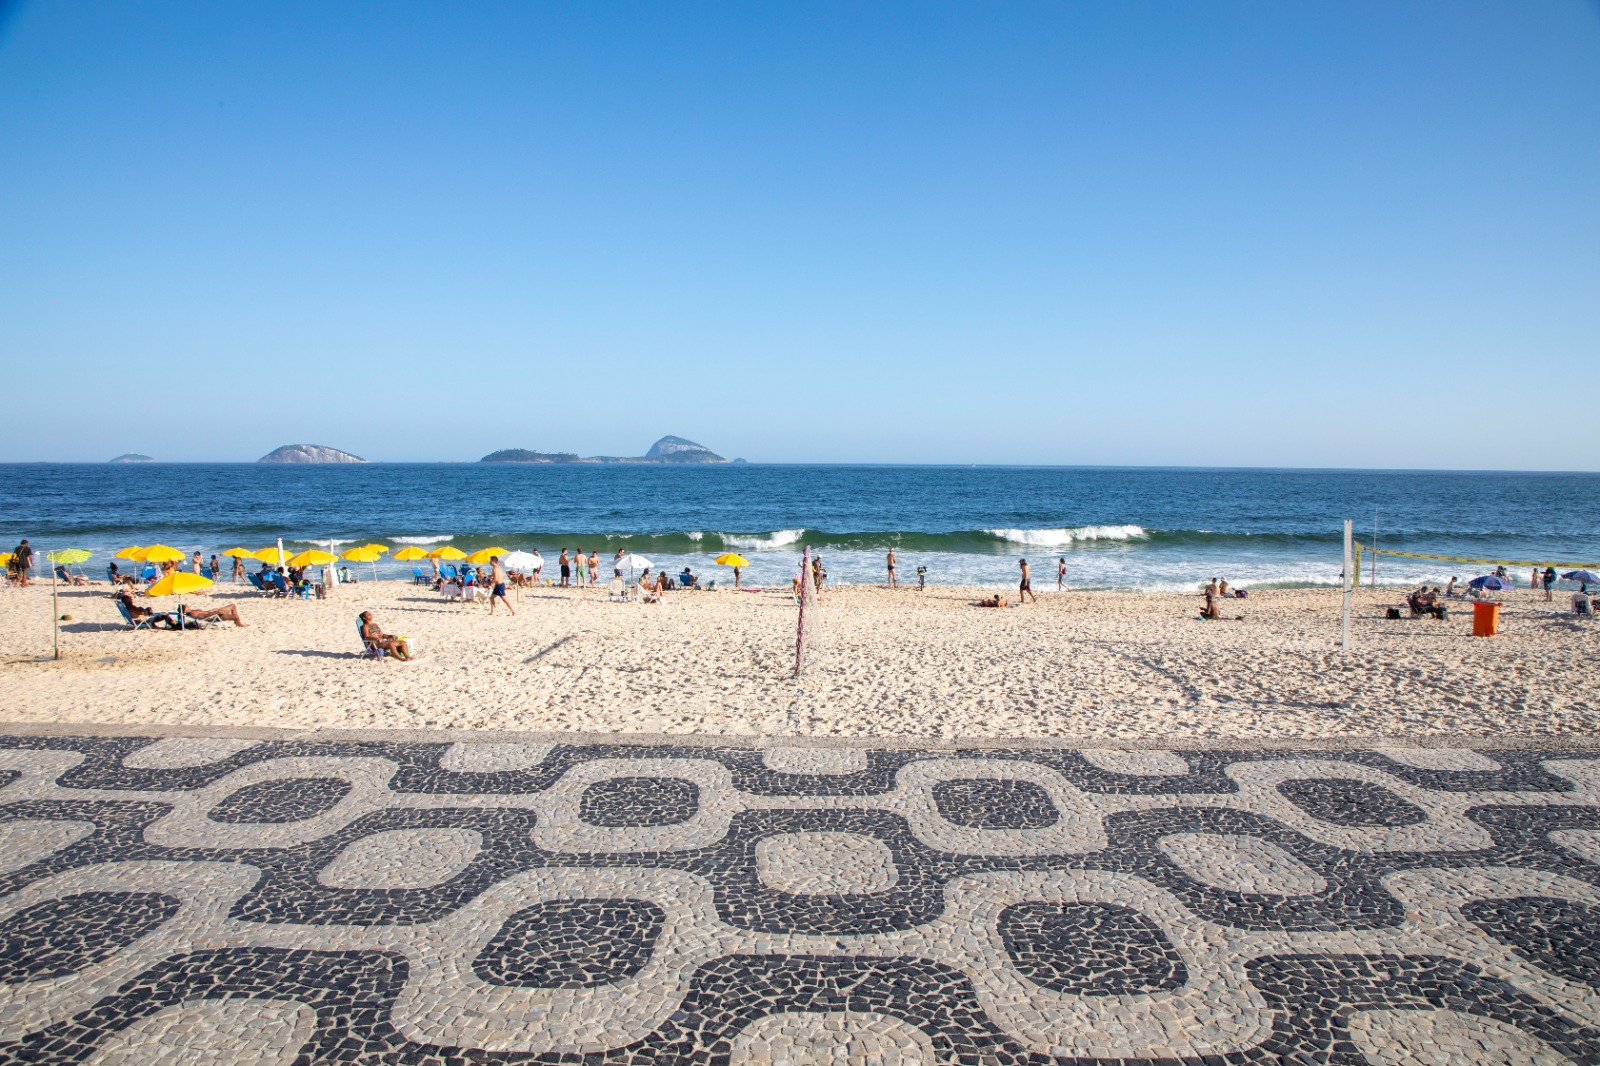 Rio de Janeiro recebe nota máxima entre os turistas e moradores, aponta pesquisa (Foto: Alexandre Macieira/Riotur)